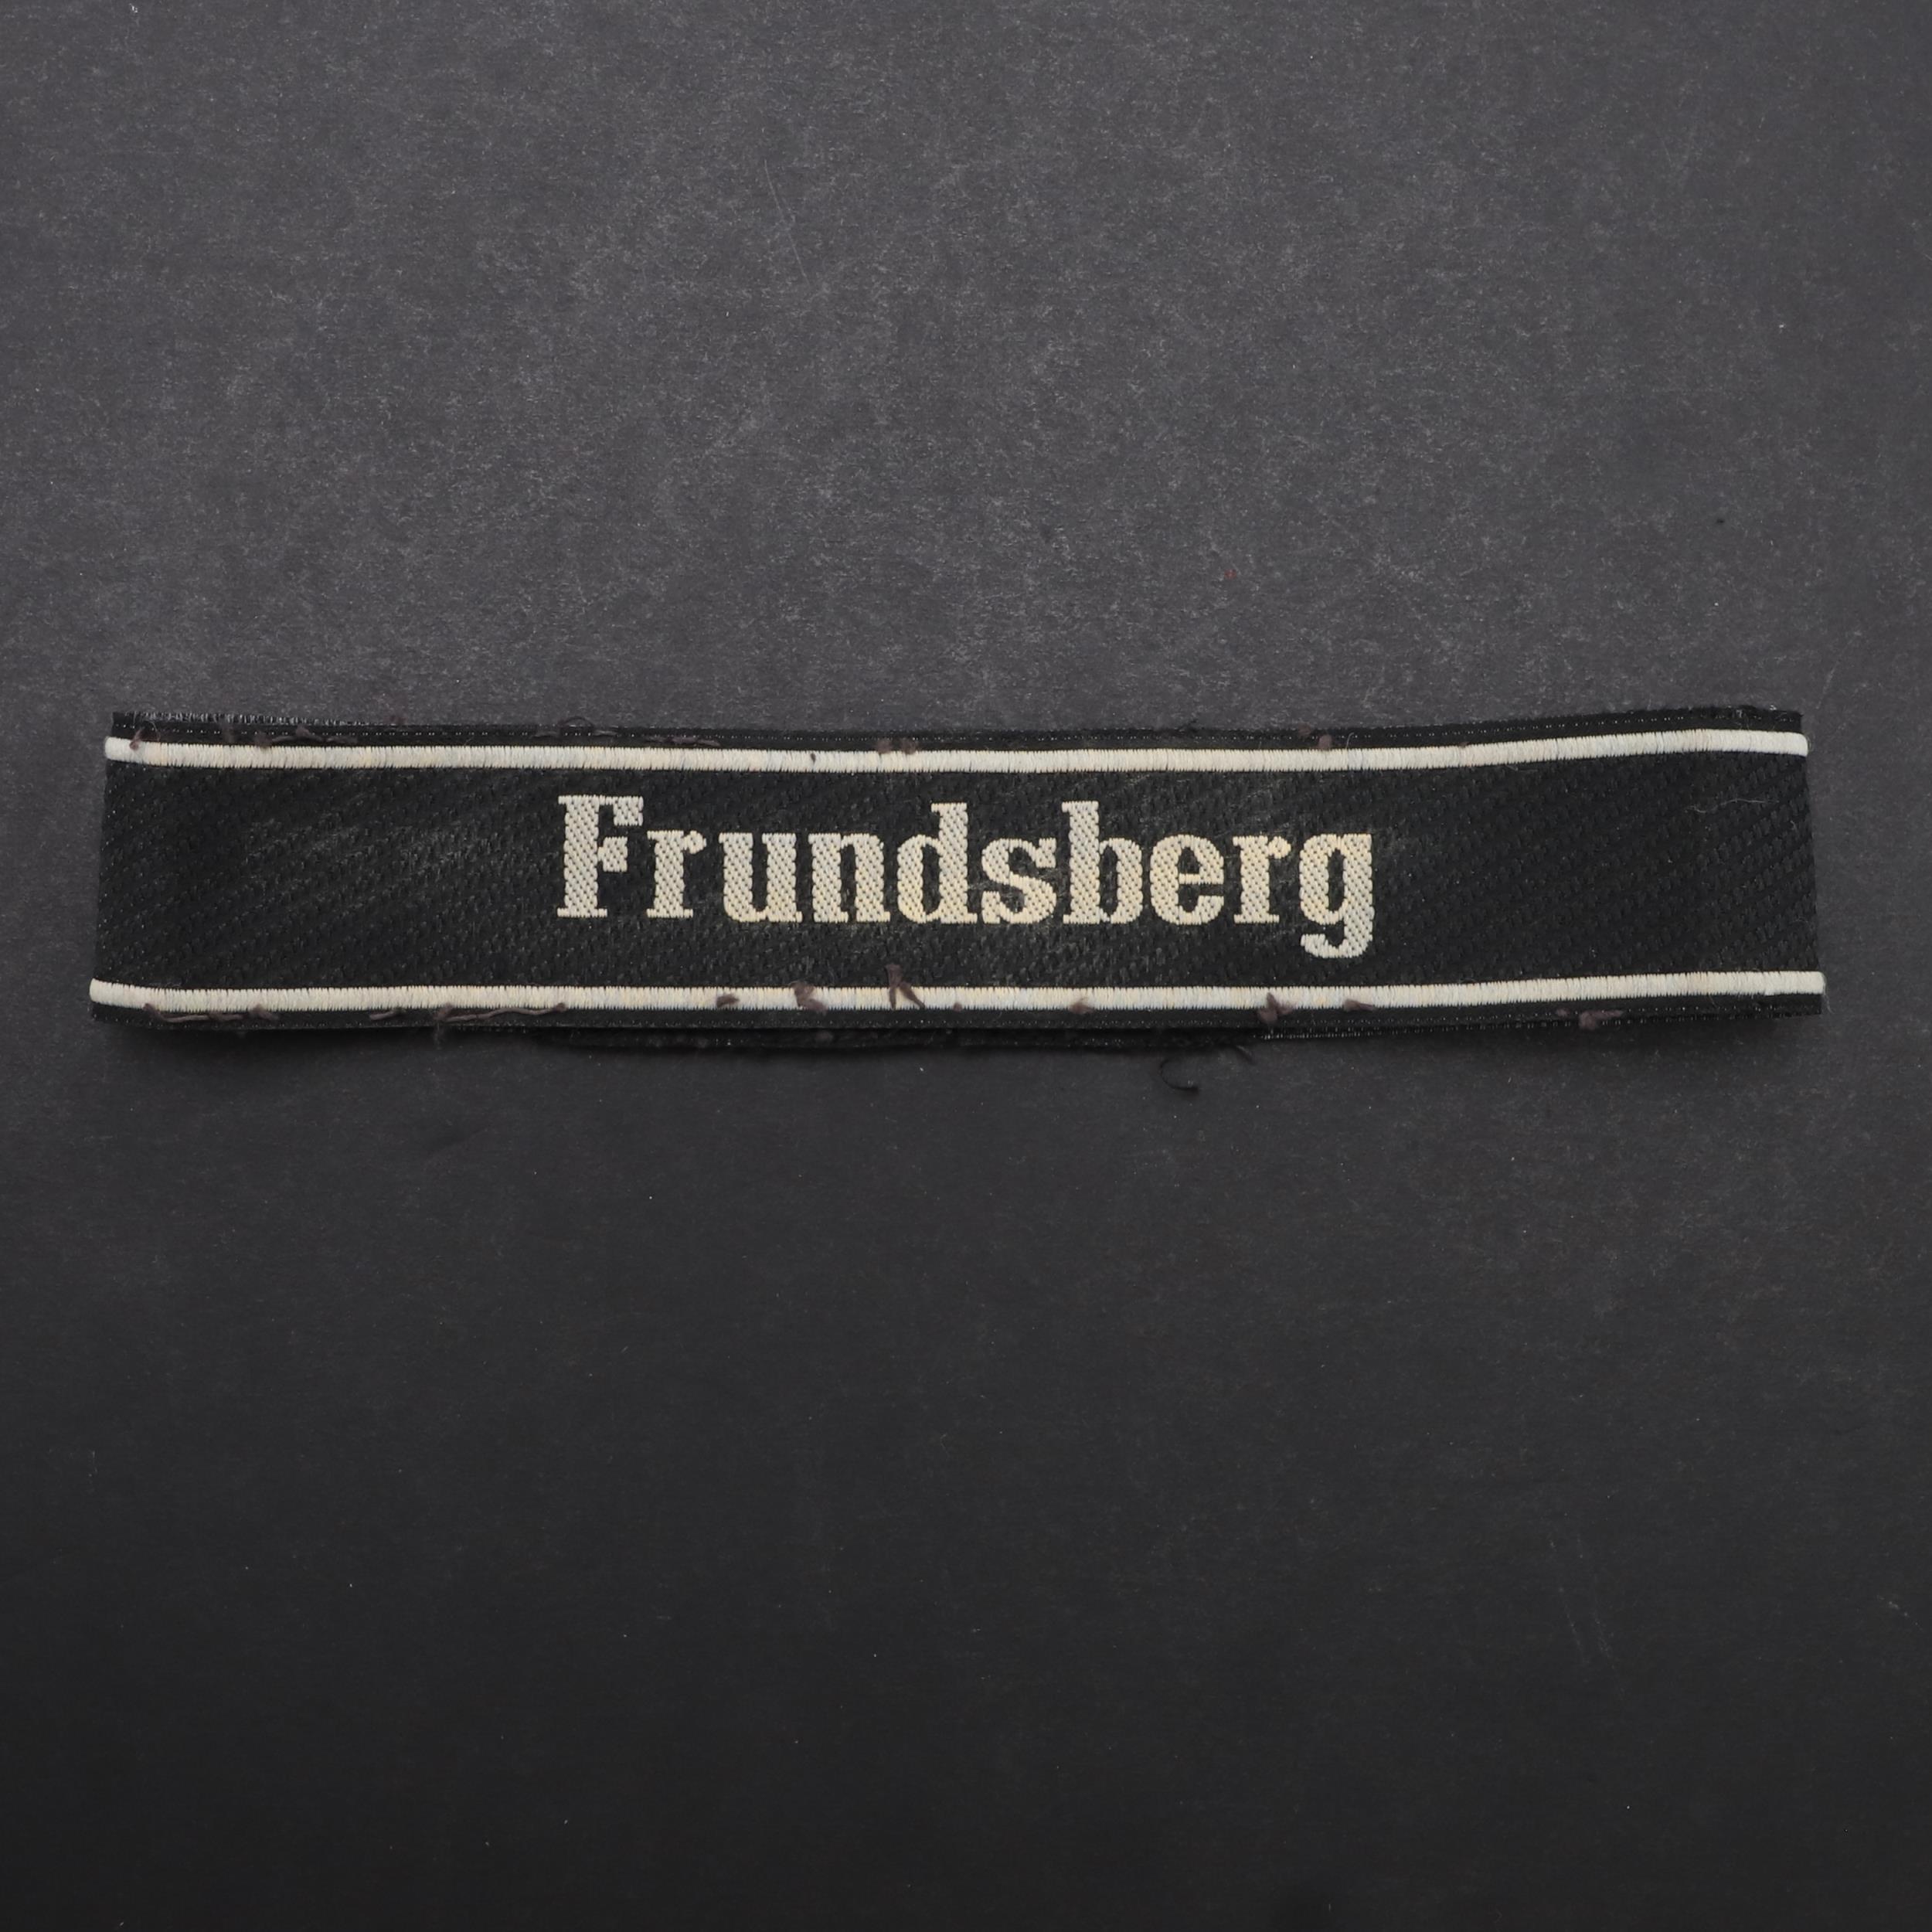 A SECOND WORLD WAR WAFFEN-SS 'FRUNDSBERG' CUFFBAND.